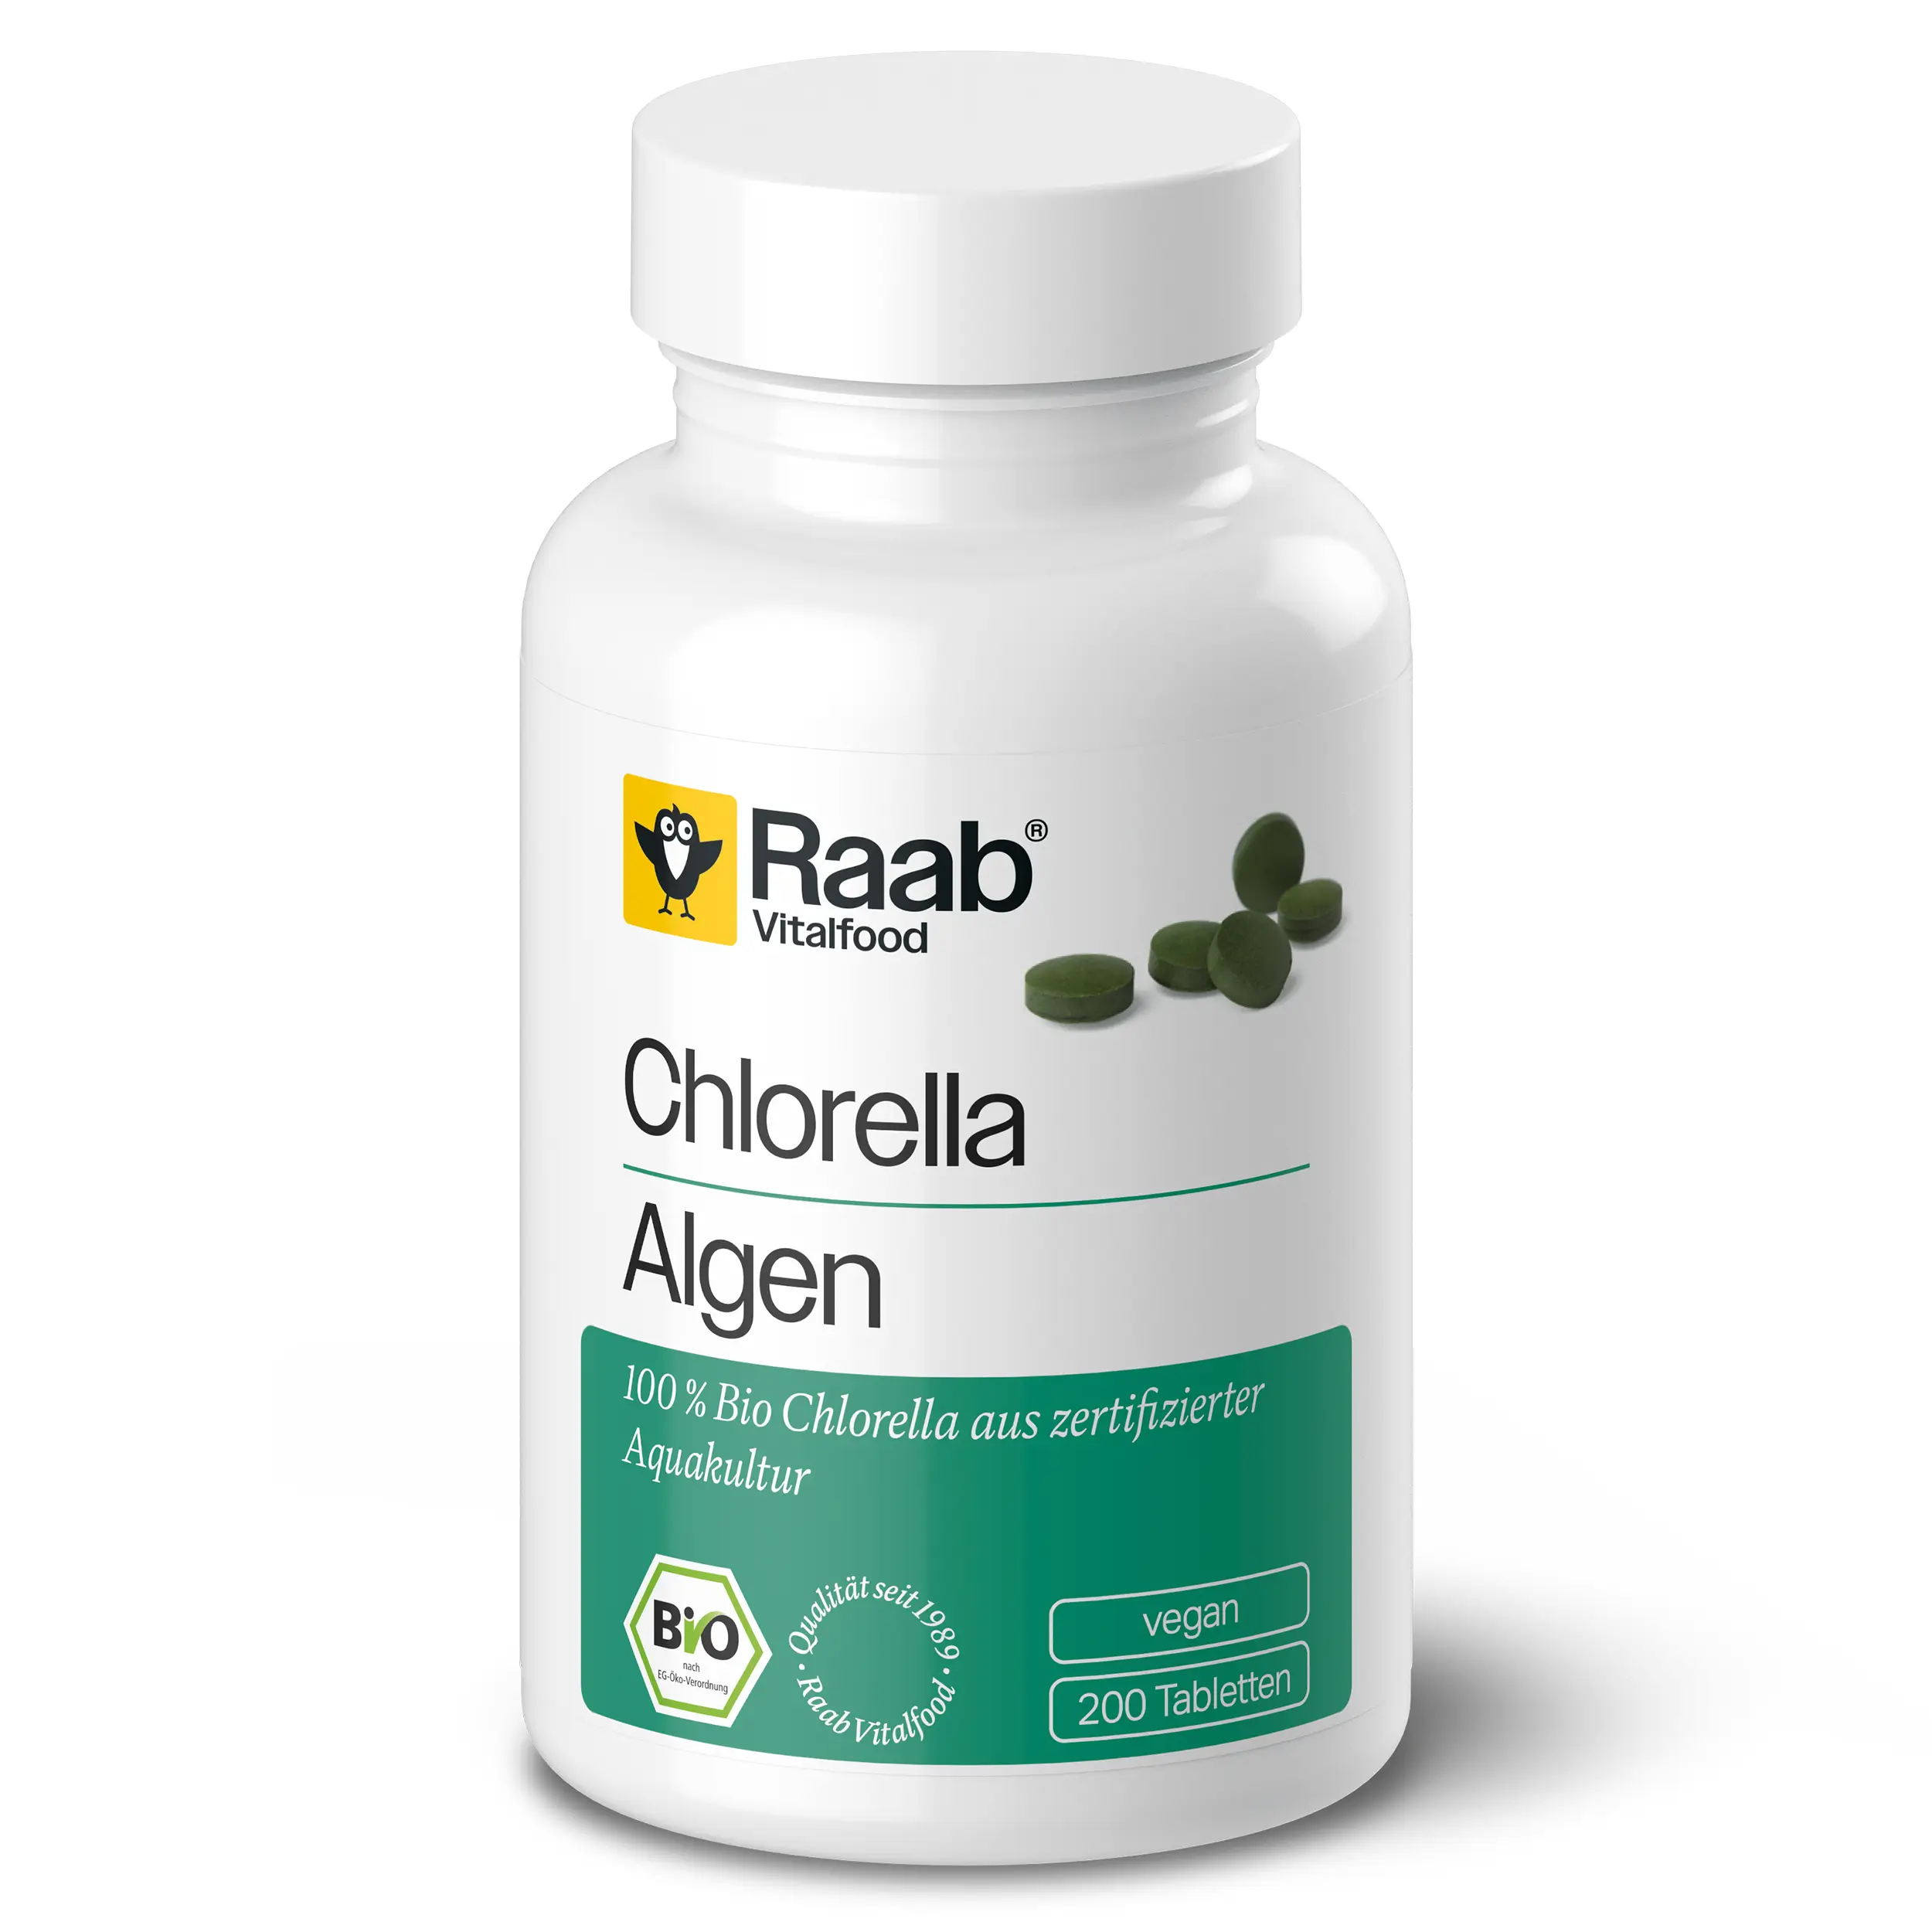 Bio Chlorella Tabletten